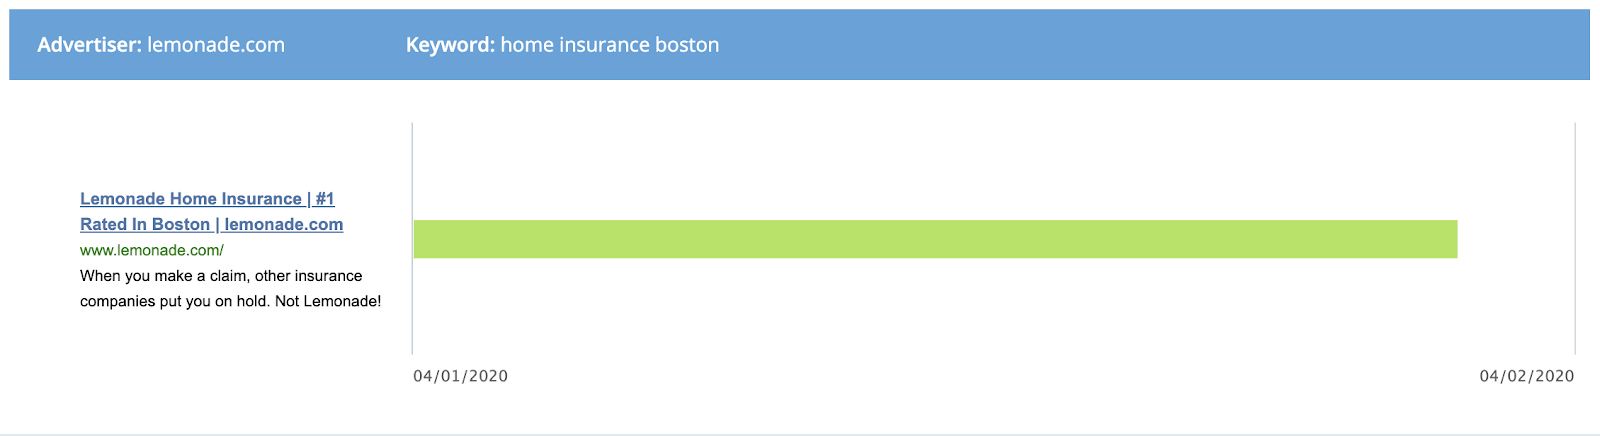 Lemonade ad: Home insurance Boston